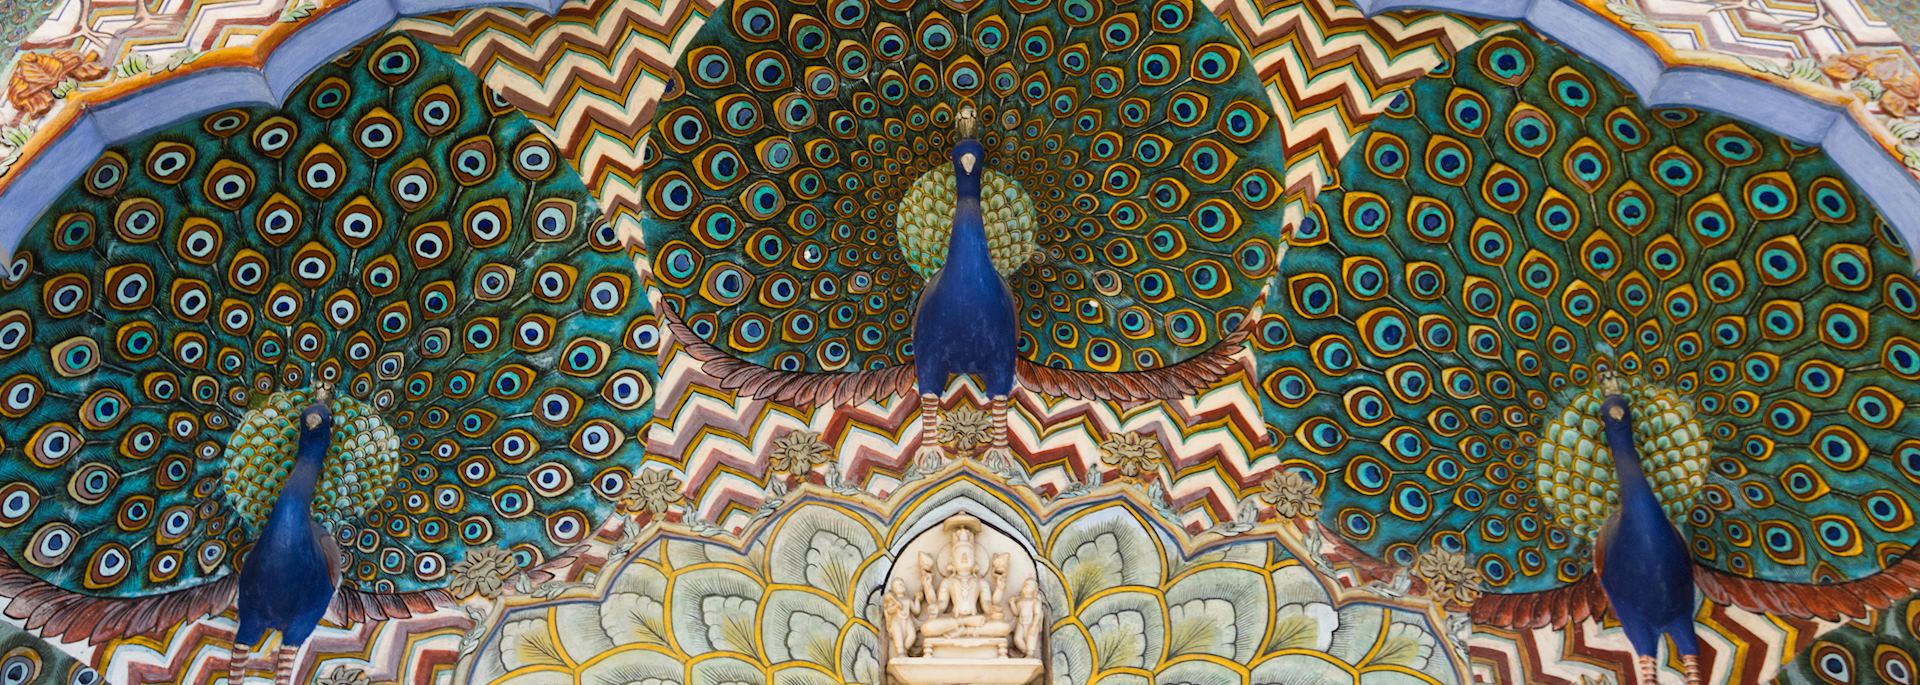 Jaipur City Palace artwork